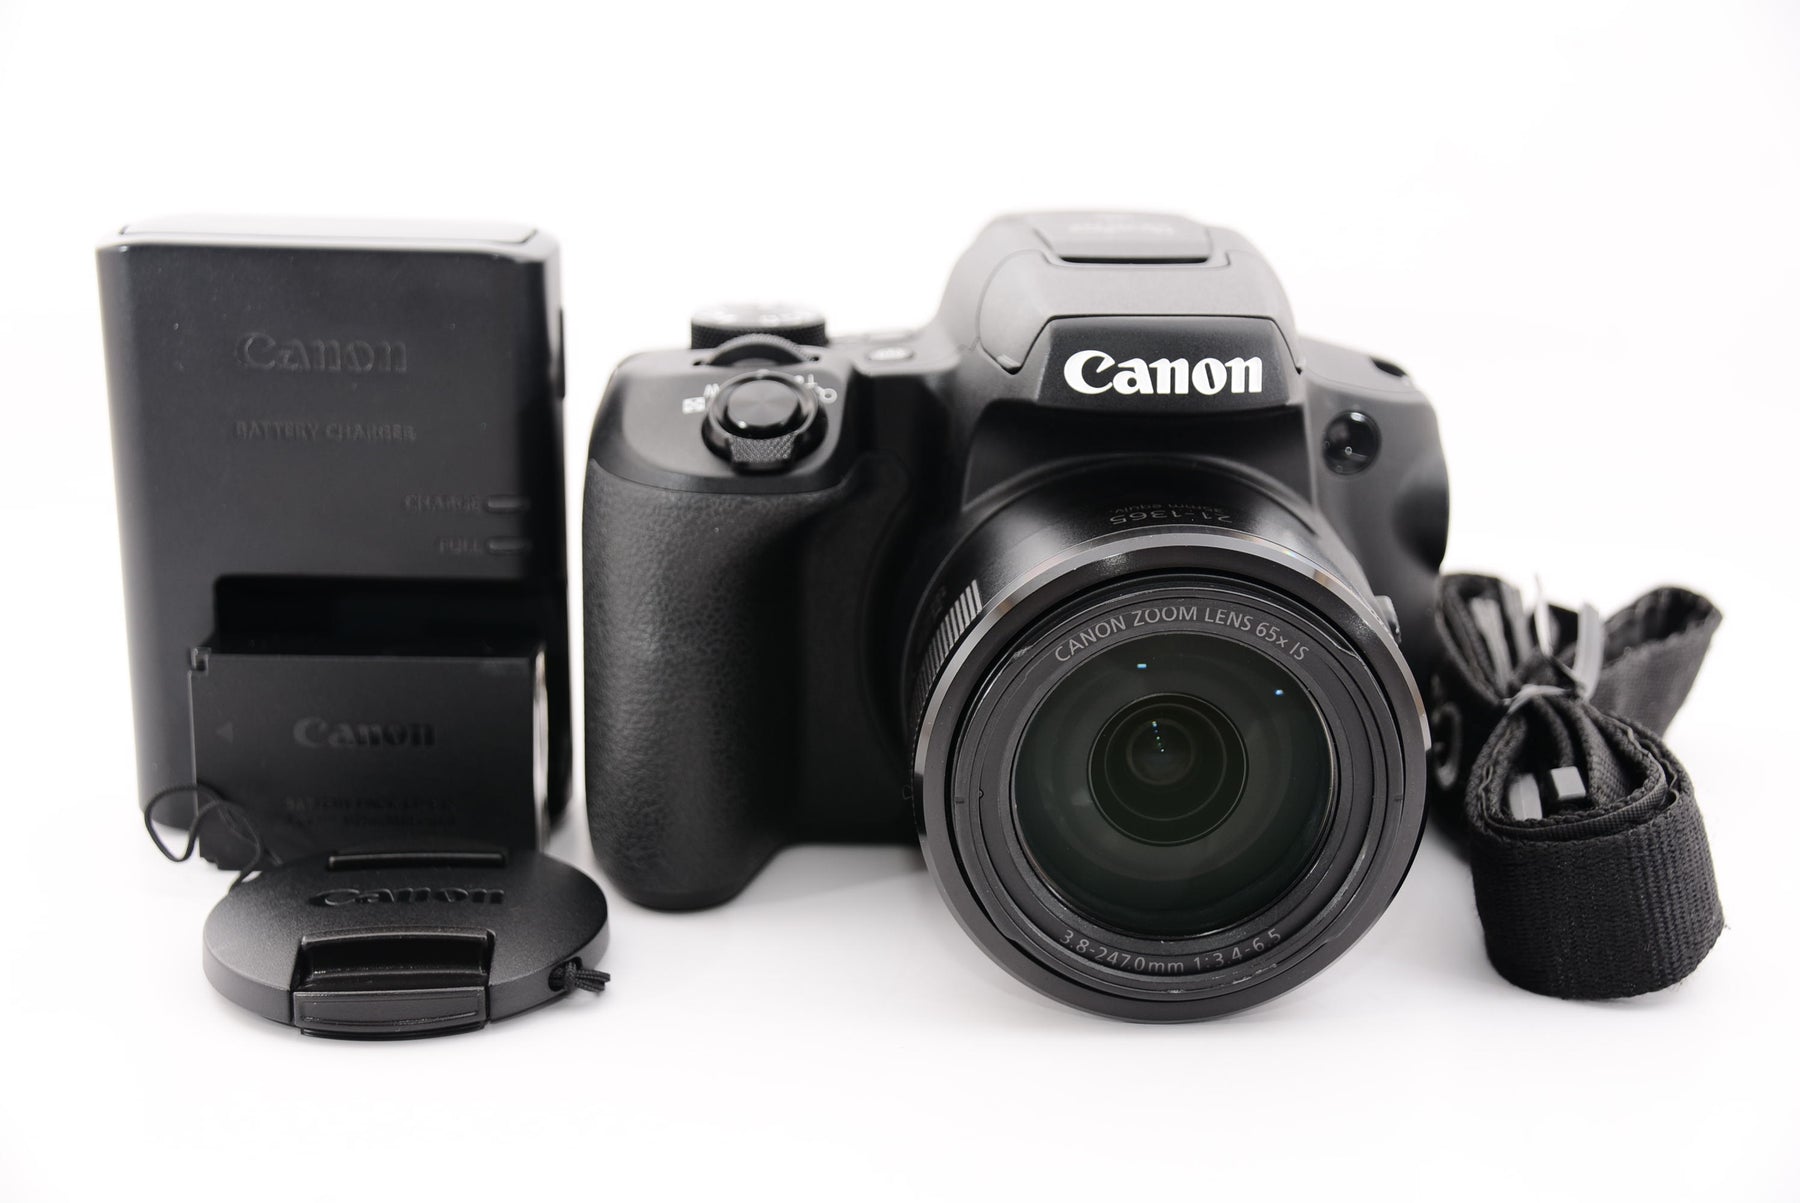 Canon コンパクトデジタルカメラ PowerShot PICK ブラック 自動撮影